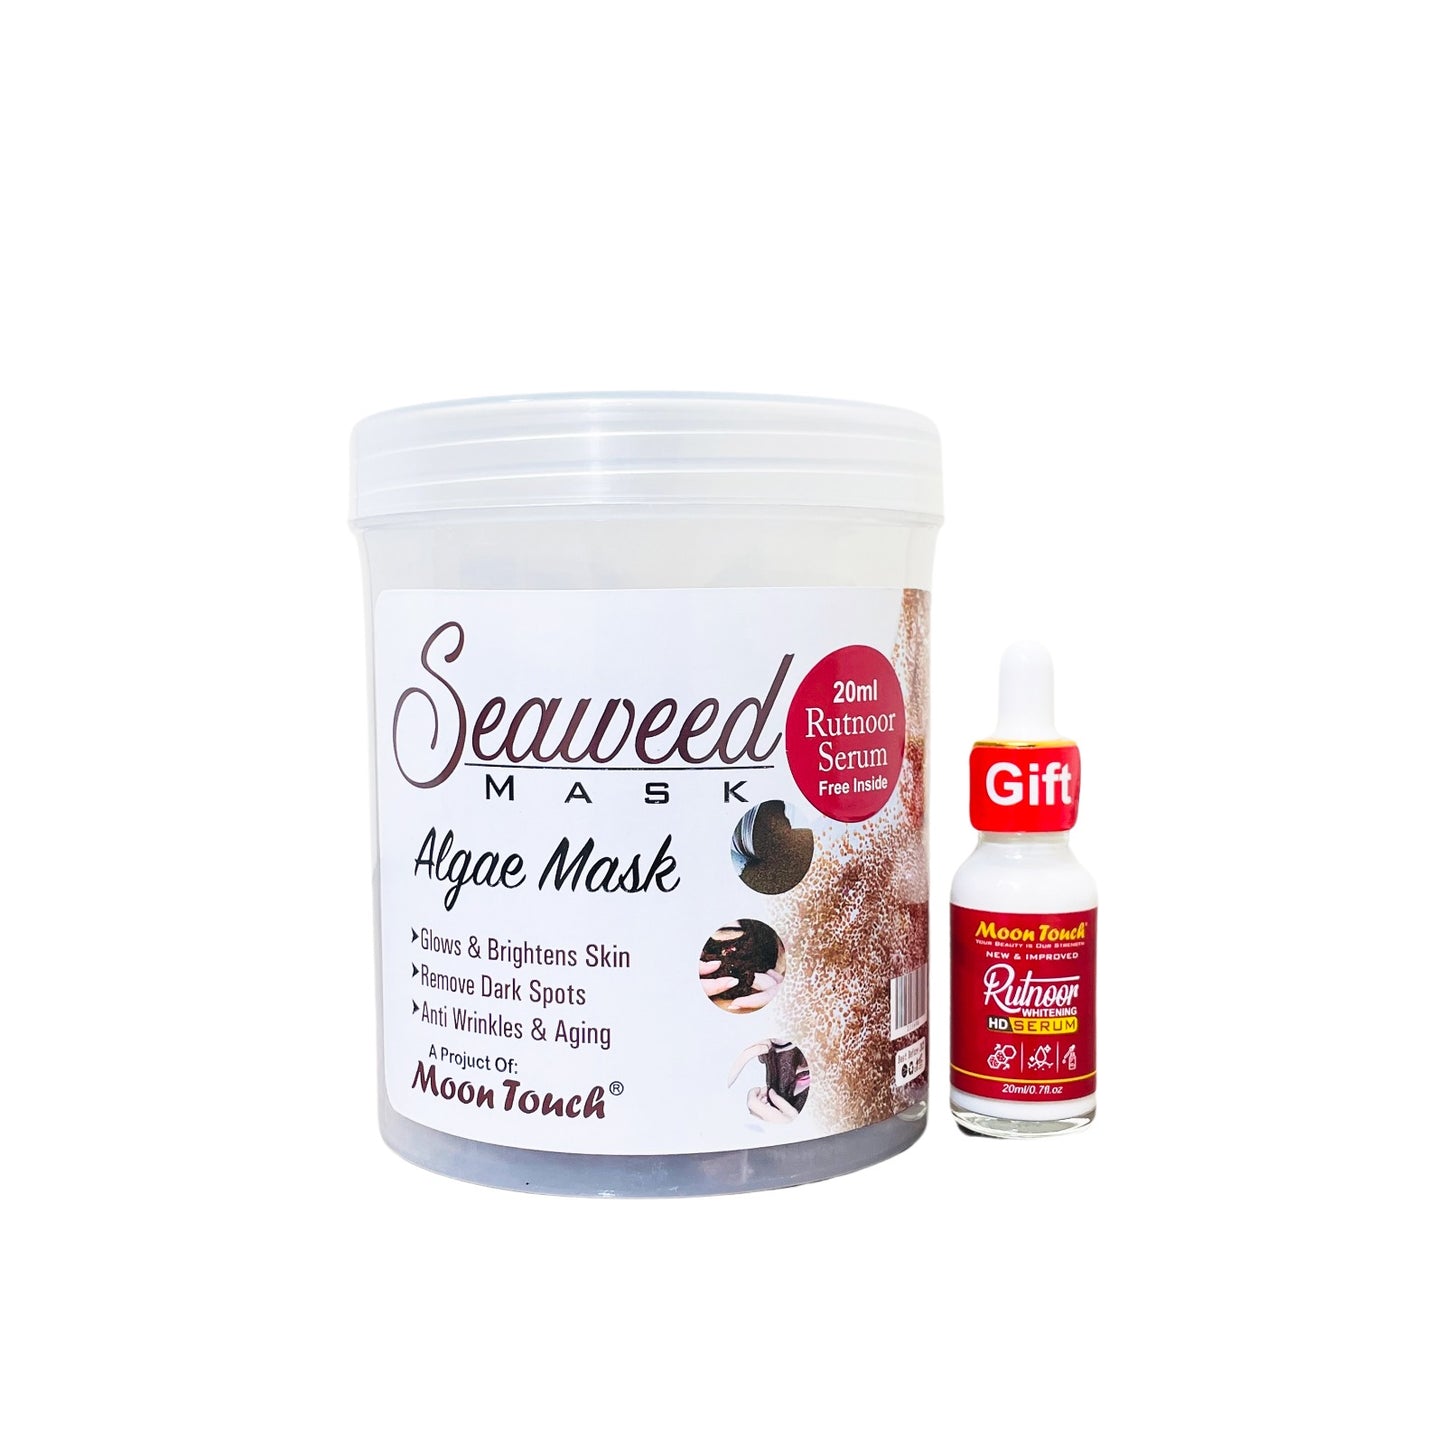 Seaweed Mask 500g + Free Rutnoor Serum 20ml